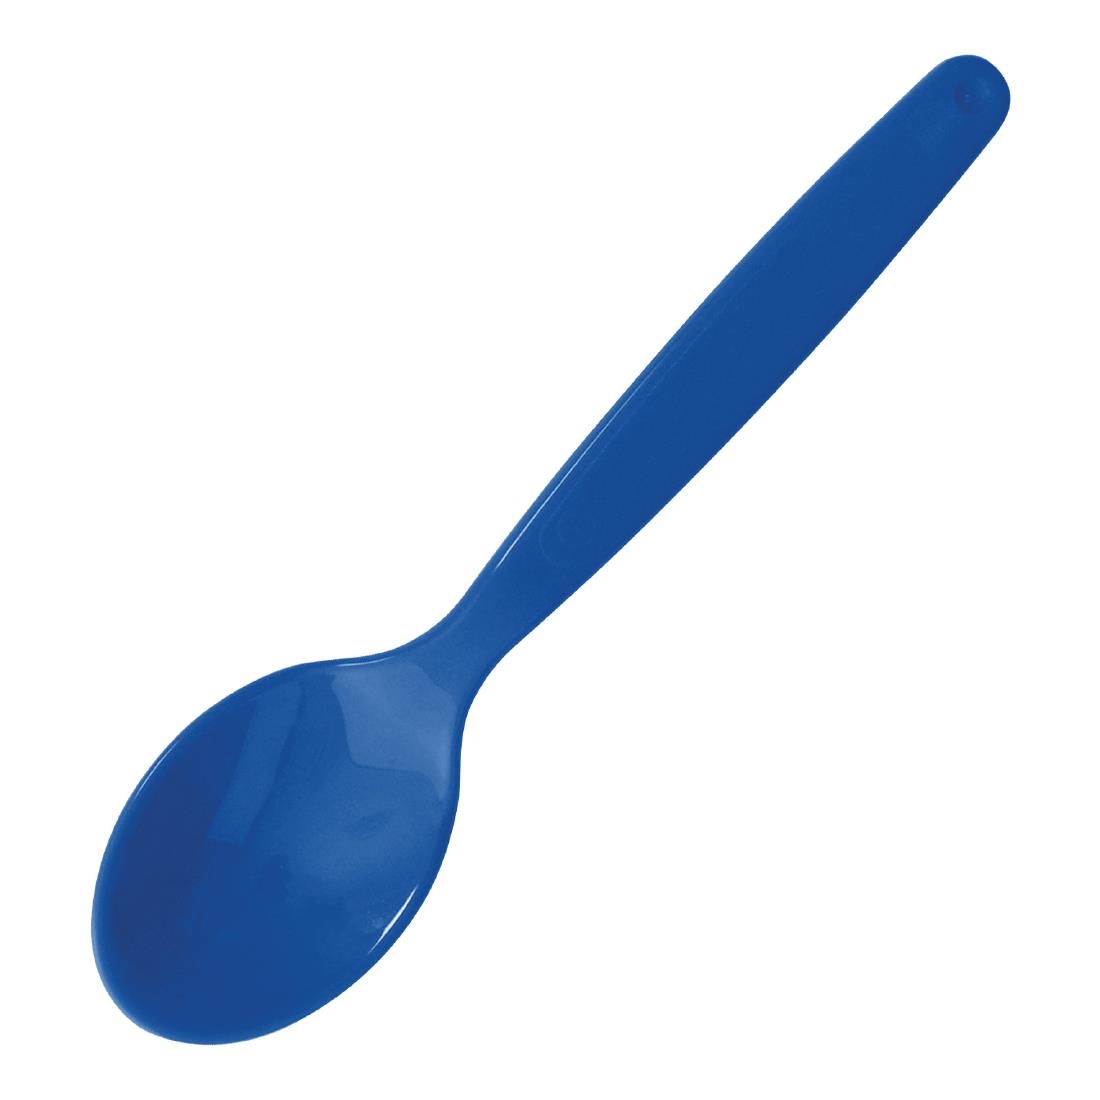 Cutlery - Blue